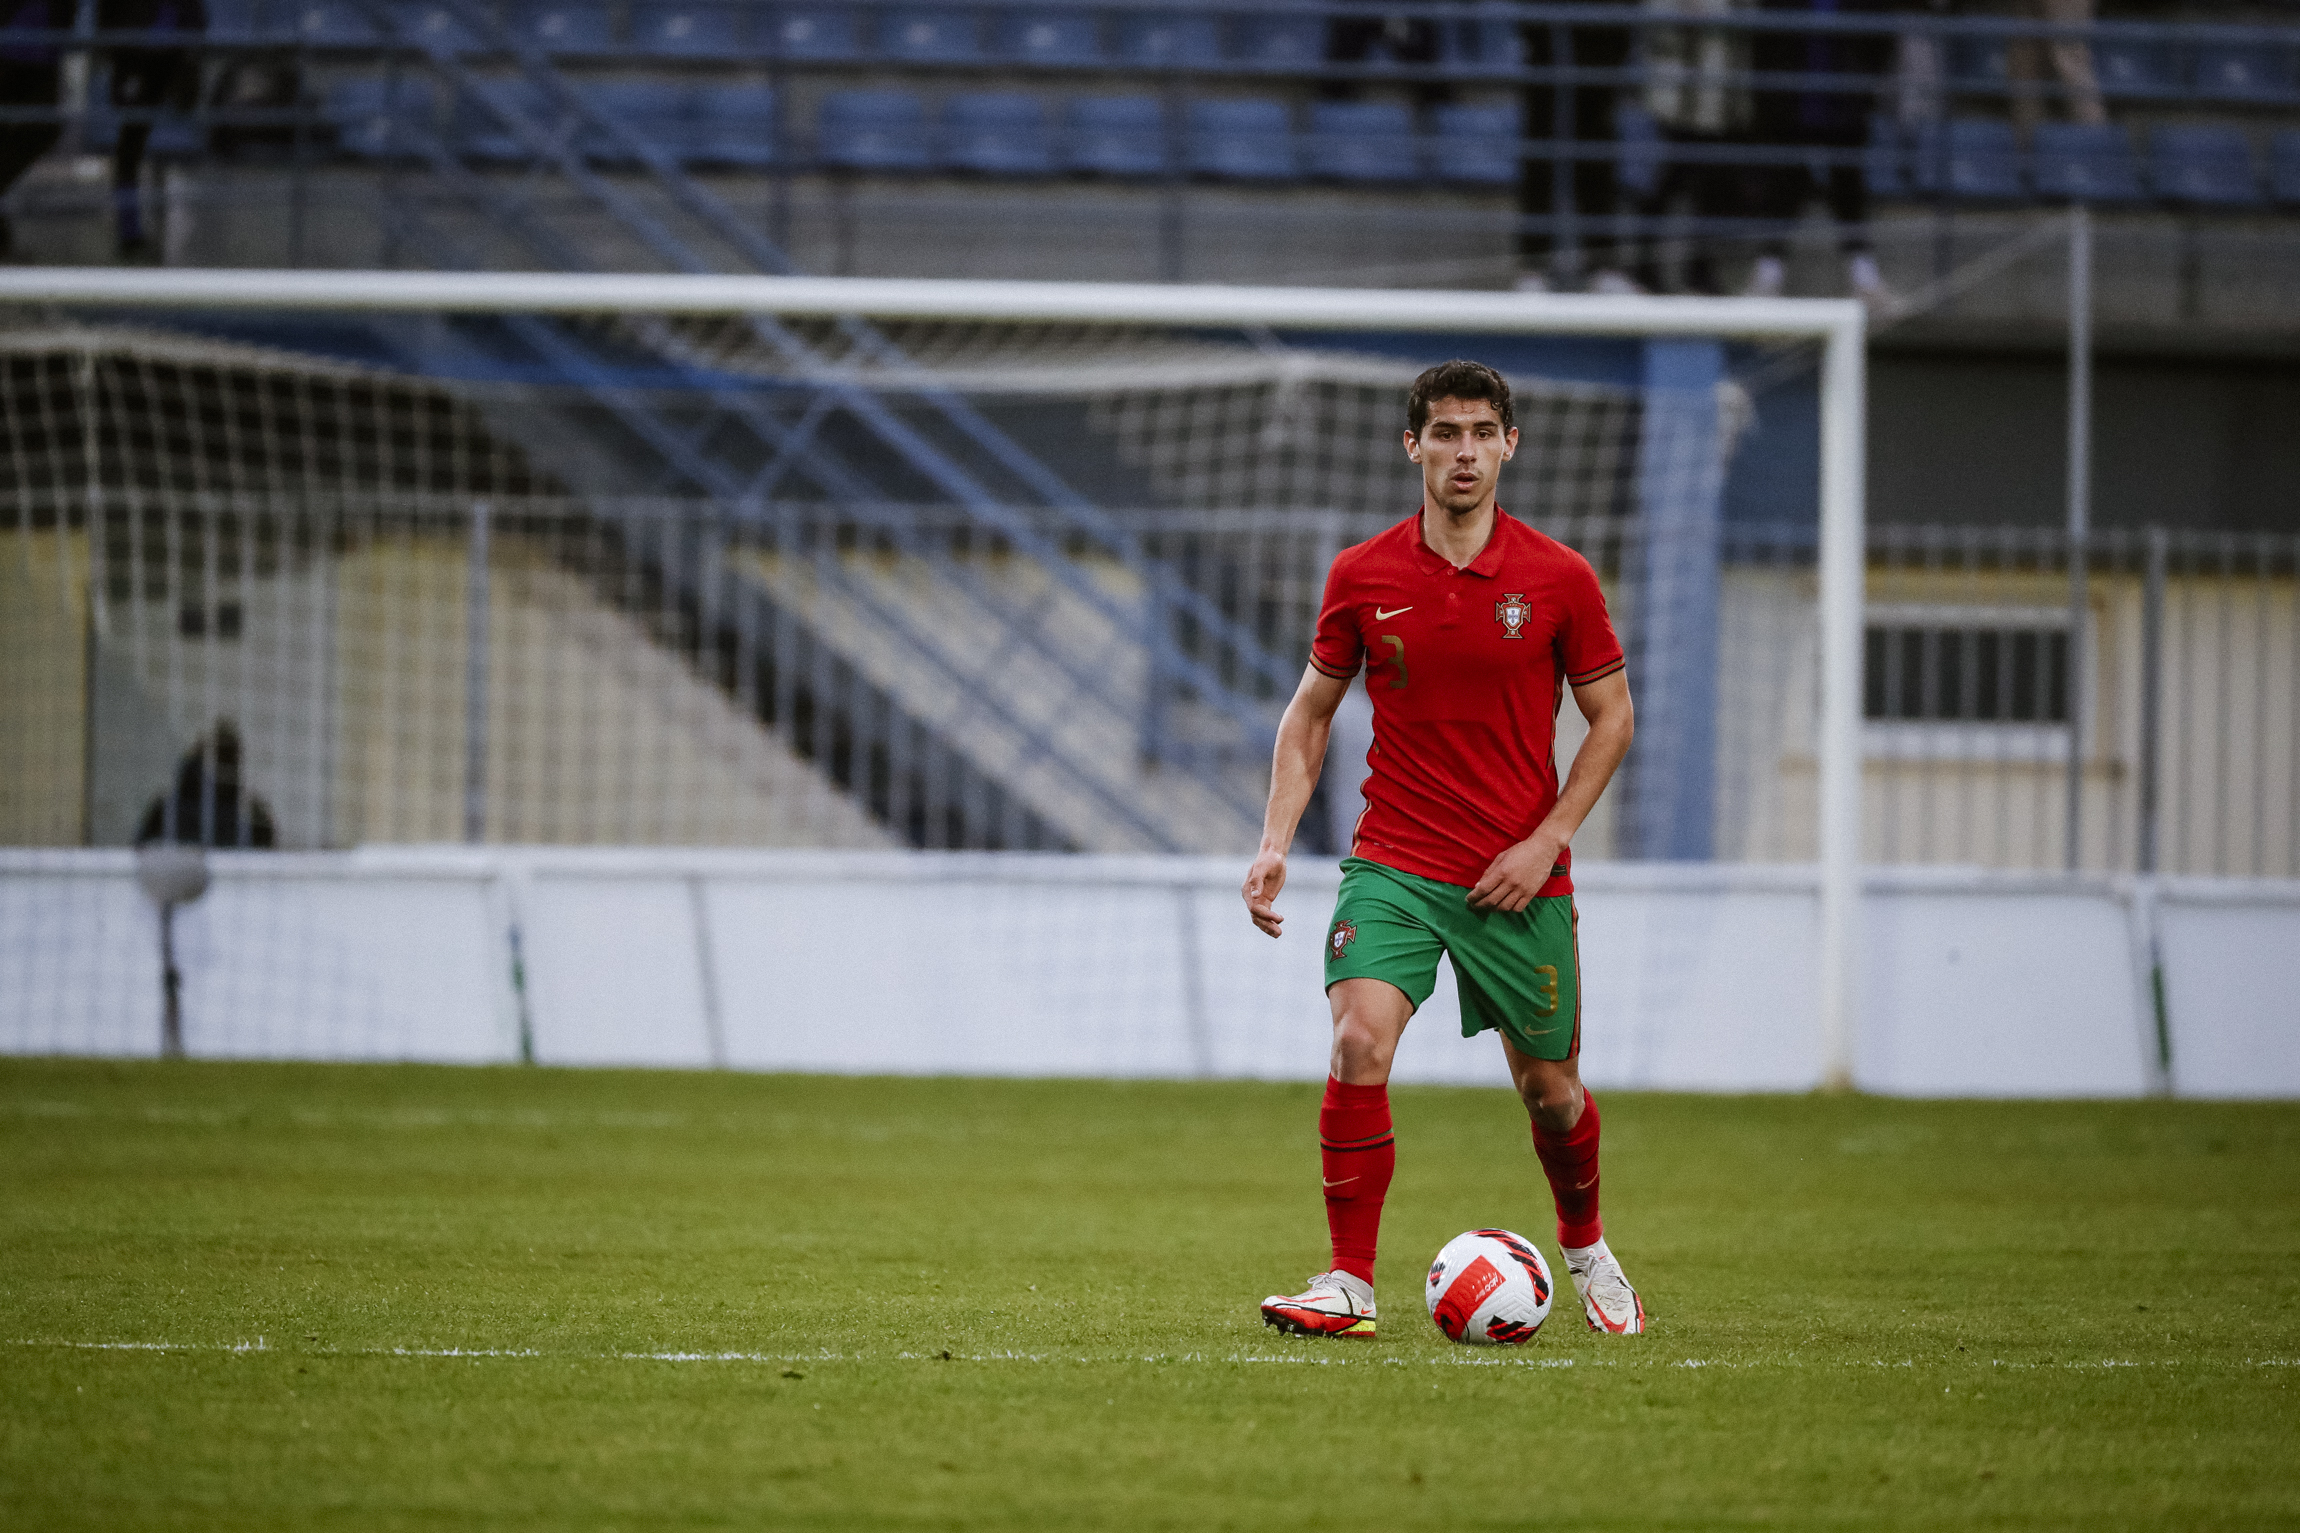 Alexandre Penetra chamado à seleção sub-21 - FC Famalicão